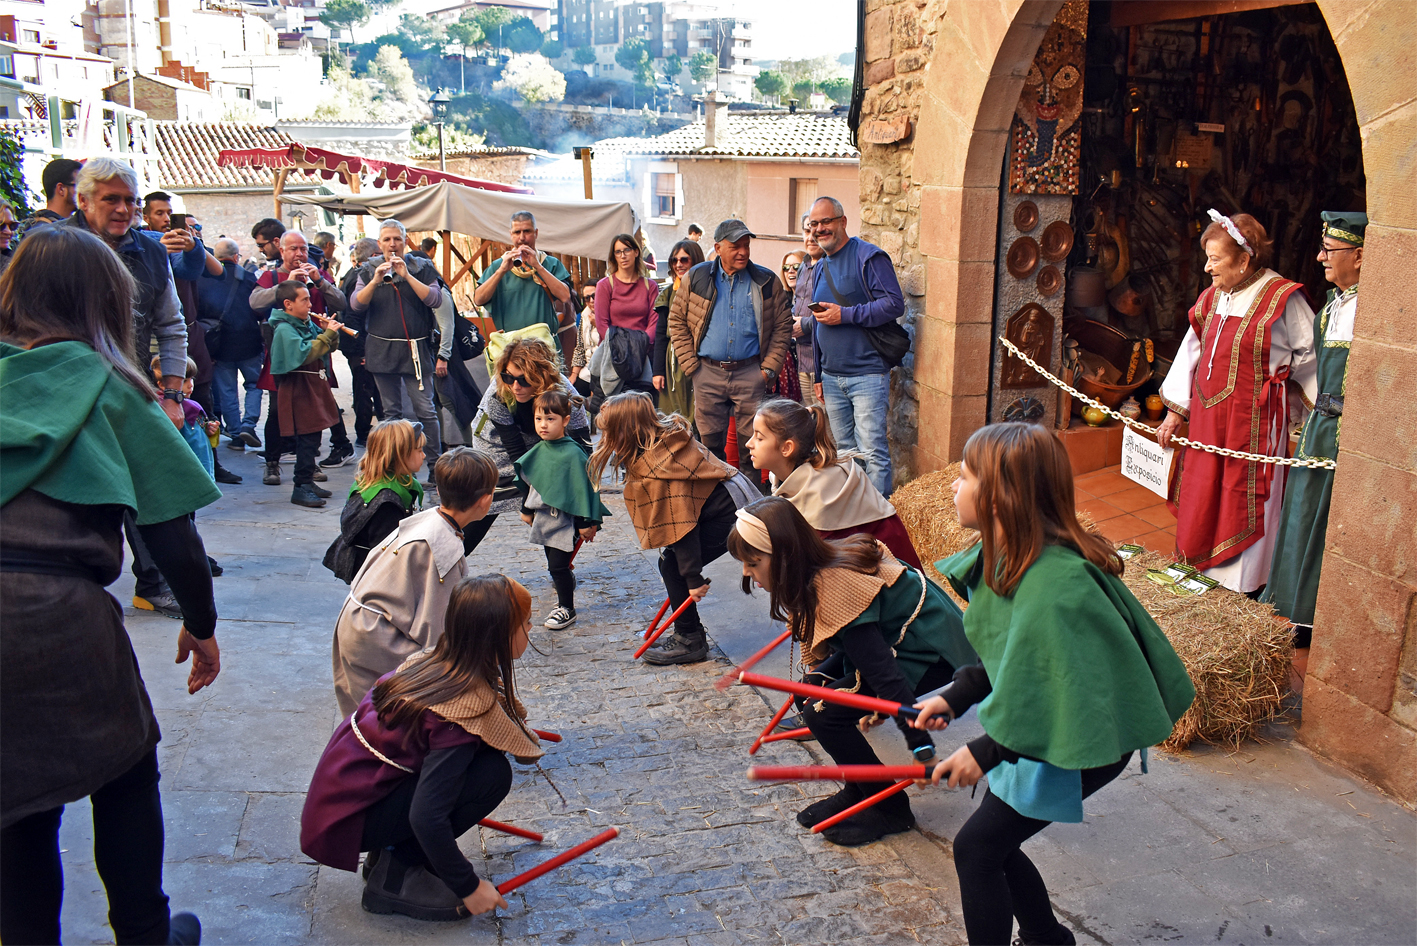 Ball de Bastons al carrer Sant CristÃ²fol durant el seguici de la Castlana, durant la 20a Fira Medieval dâ€™Oficis de SÃºria.